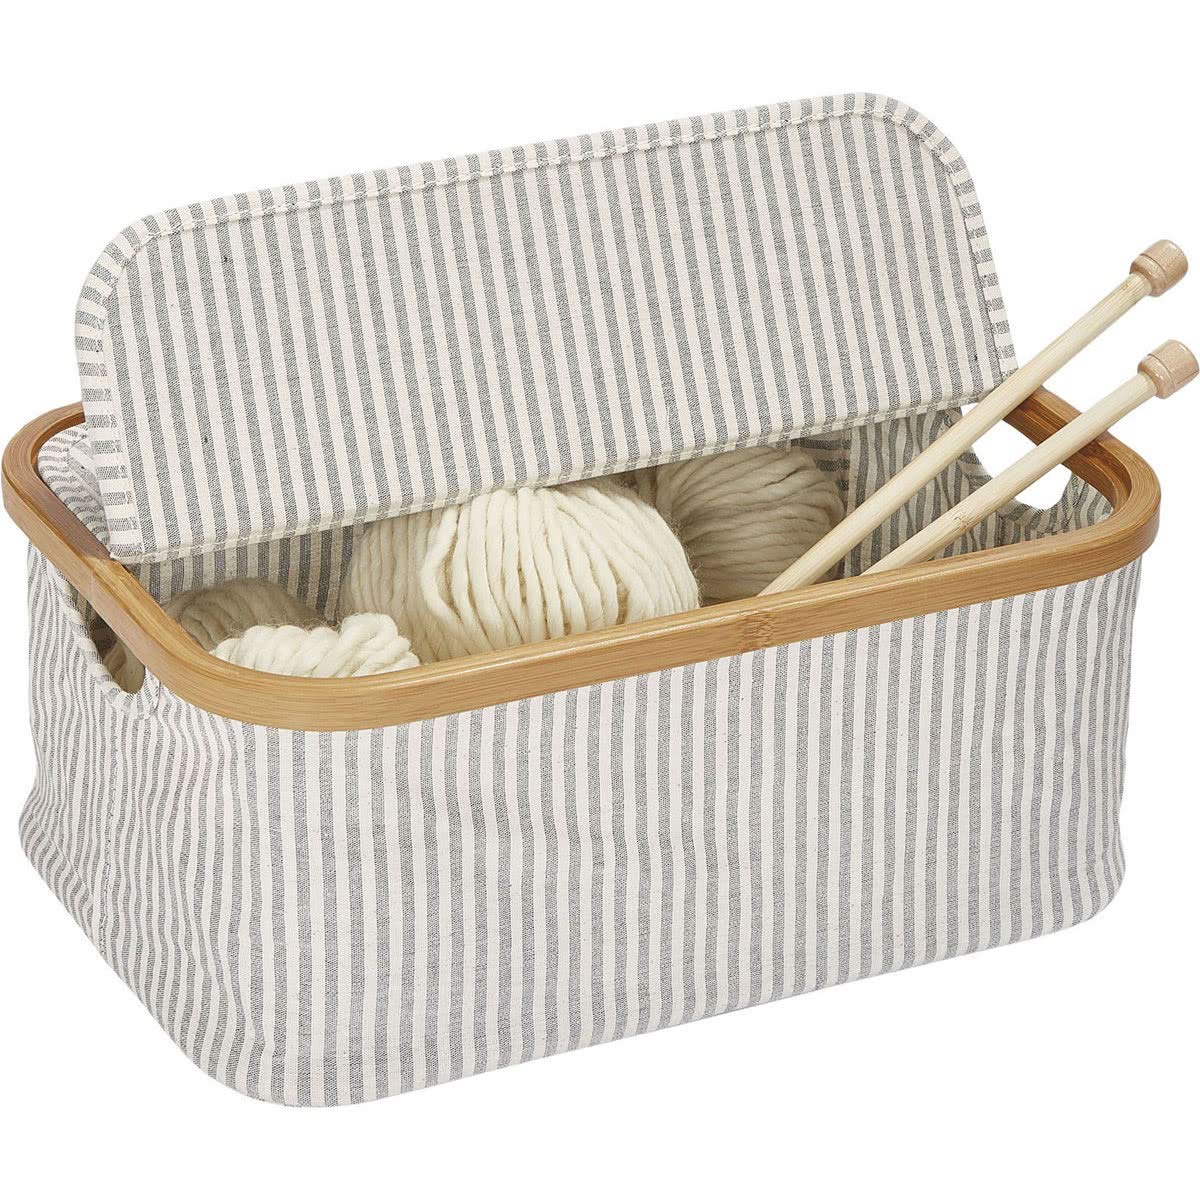 Prym Foldable Sewing Basket, Grey, 38 x 26 x 16 cm